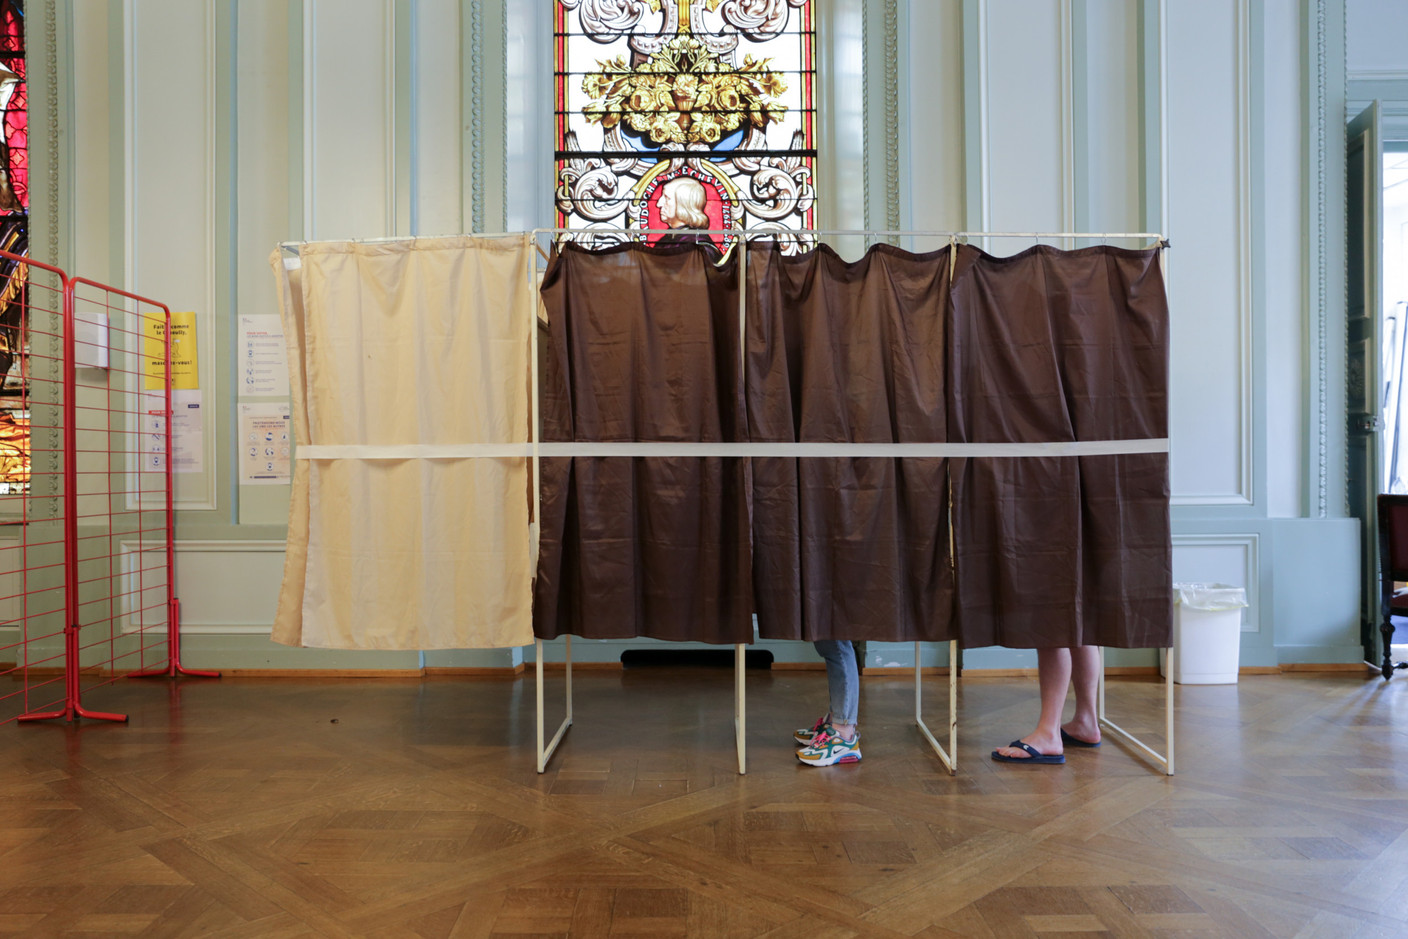 22.606 électeurs se sont rendus aux urnes ce dimanche à Metz, soit 32,37% de participation. (Photo: Romain Gamba/Maison Moderne)